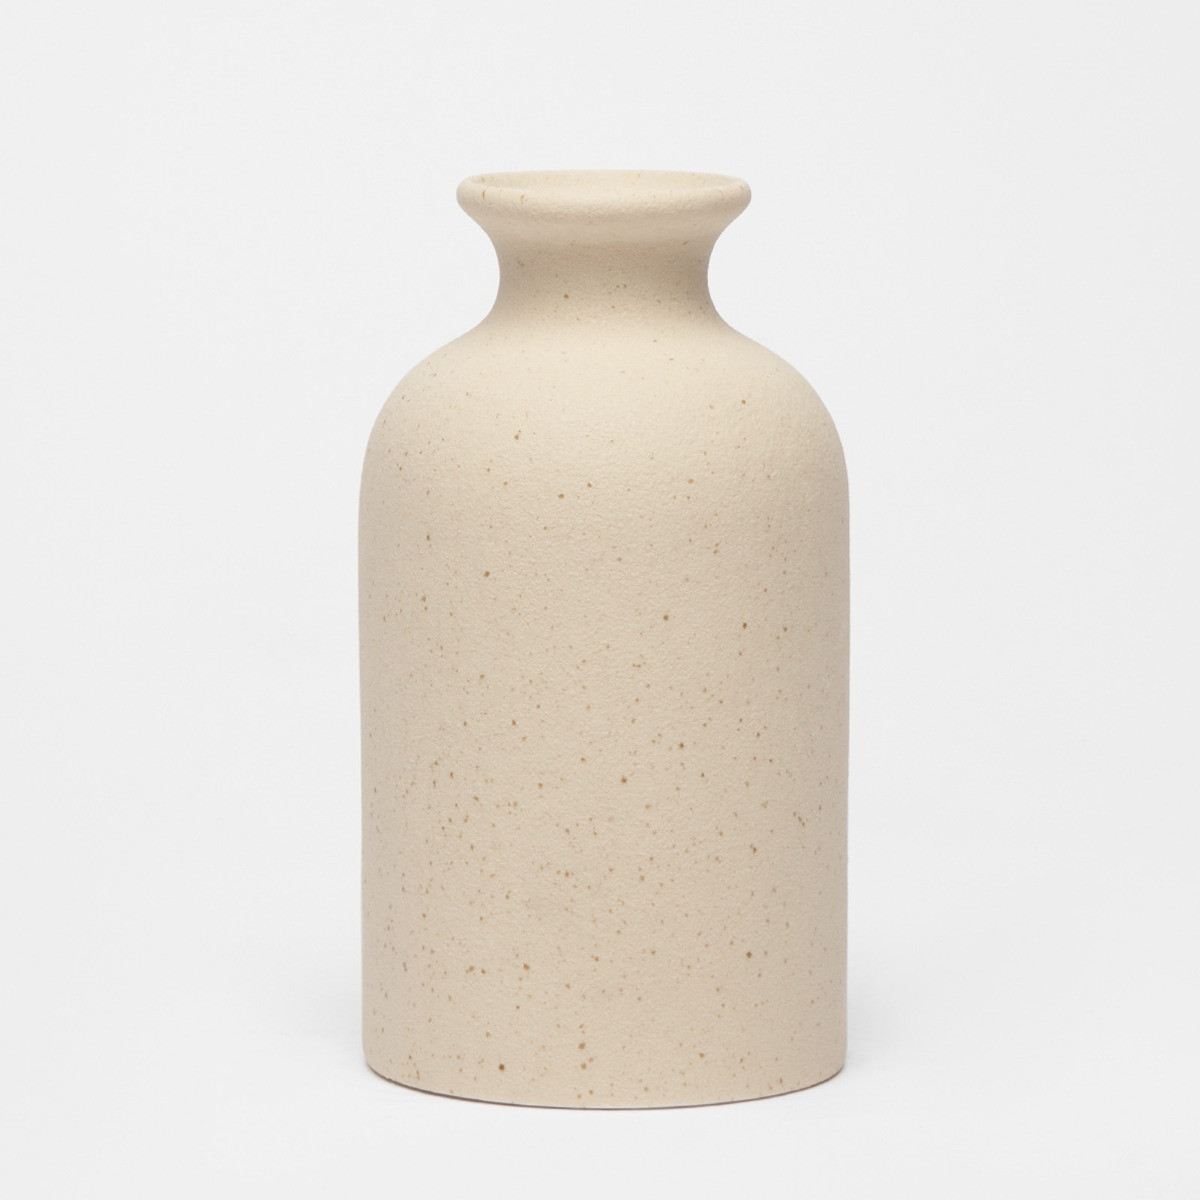 OHS Speckled Ceramic Bud Vase - Natural>